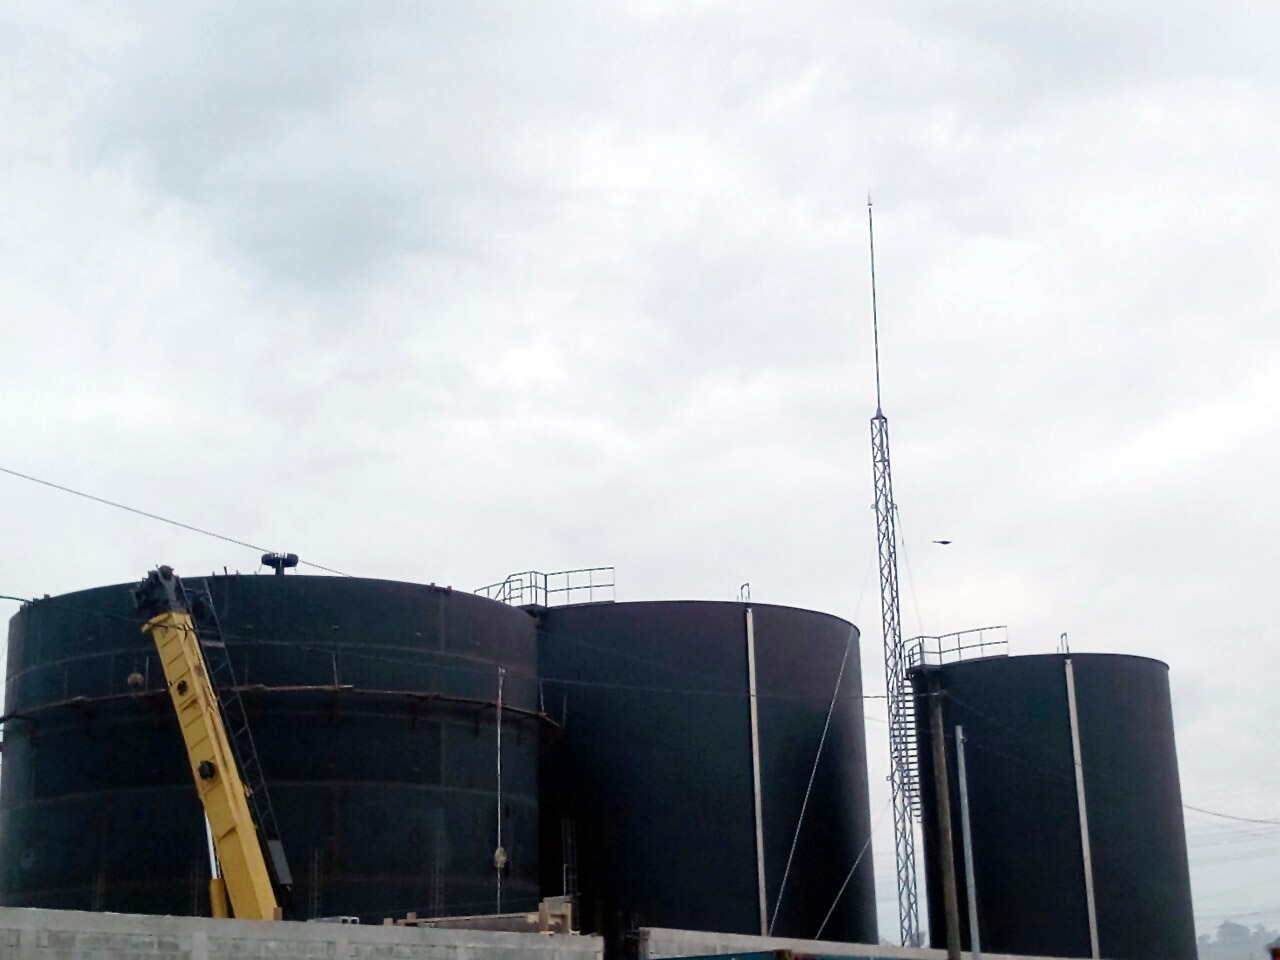 Aplicaciones Tecnológicas protegeu com os seus para-raios DAT Controler Plus 45 uma companhia de tanques de armazenamento de óleo de palma. Esta instalação está localizada na zona Livre da Indústria e Comércio (Zolic) de Puerto Barrio, na Guatemala.